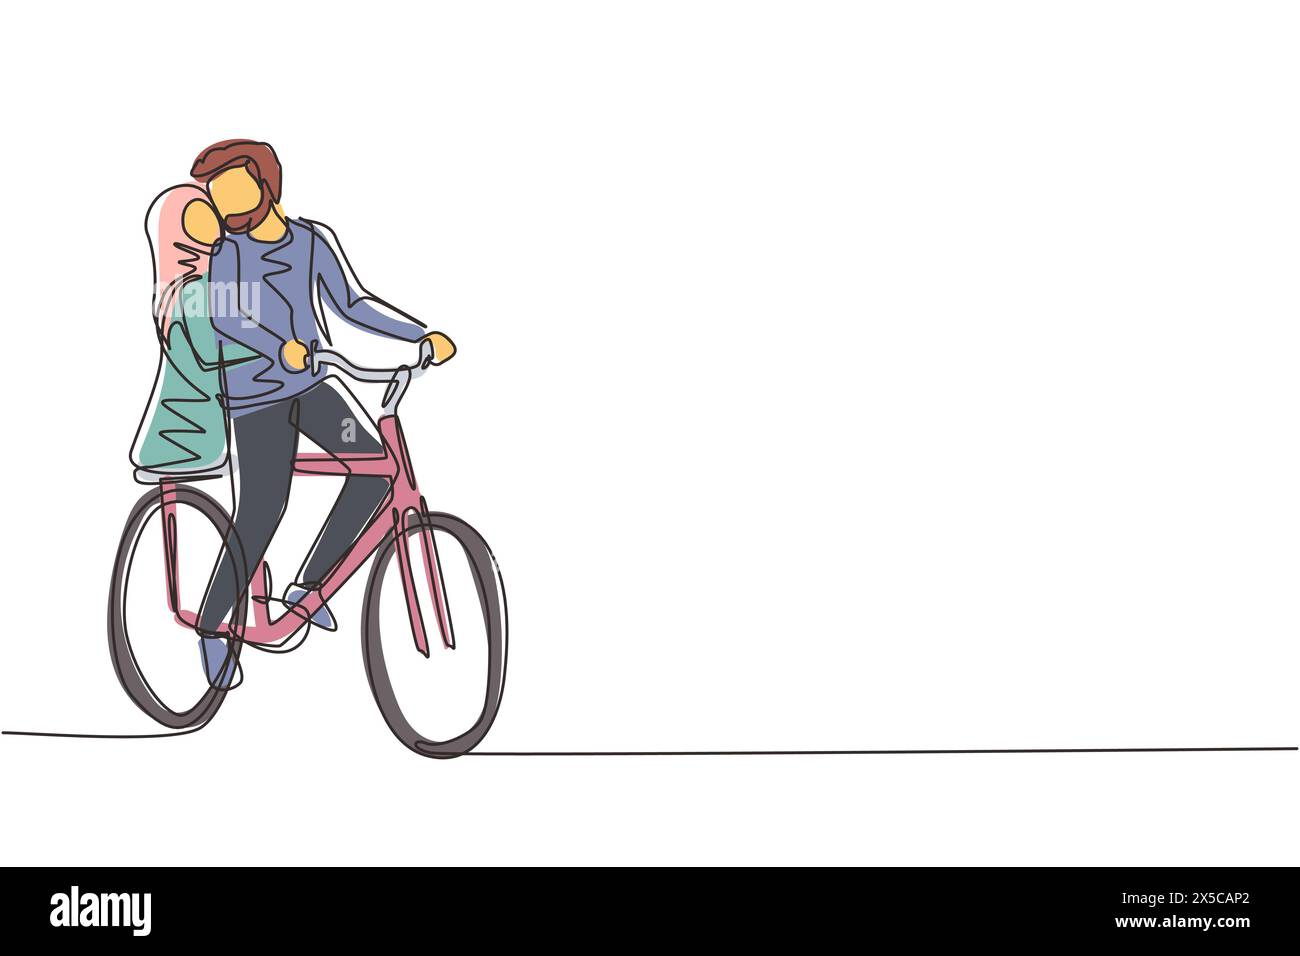 Simple une ligne dessinant jeune couple arabe aimant cyclisme. Relations humaines romantiques, histoire d'amour, famille nouvellement mariée dans l'aventure de voyage de lune de miel, pass Illustration de Vecteur